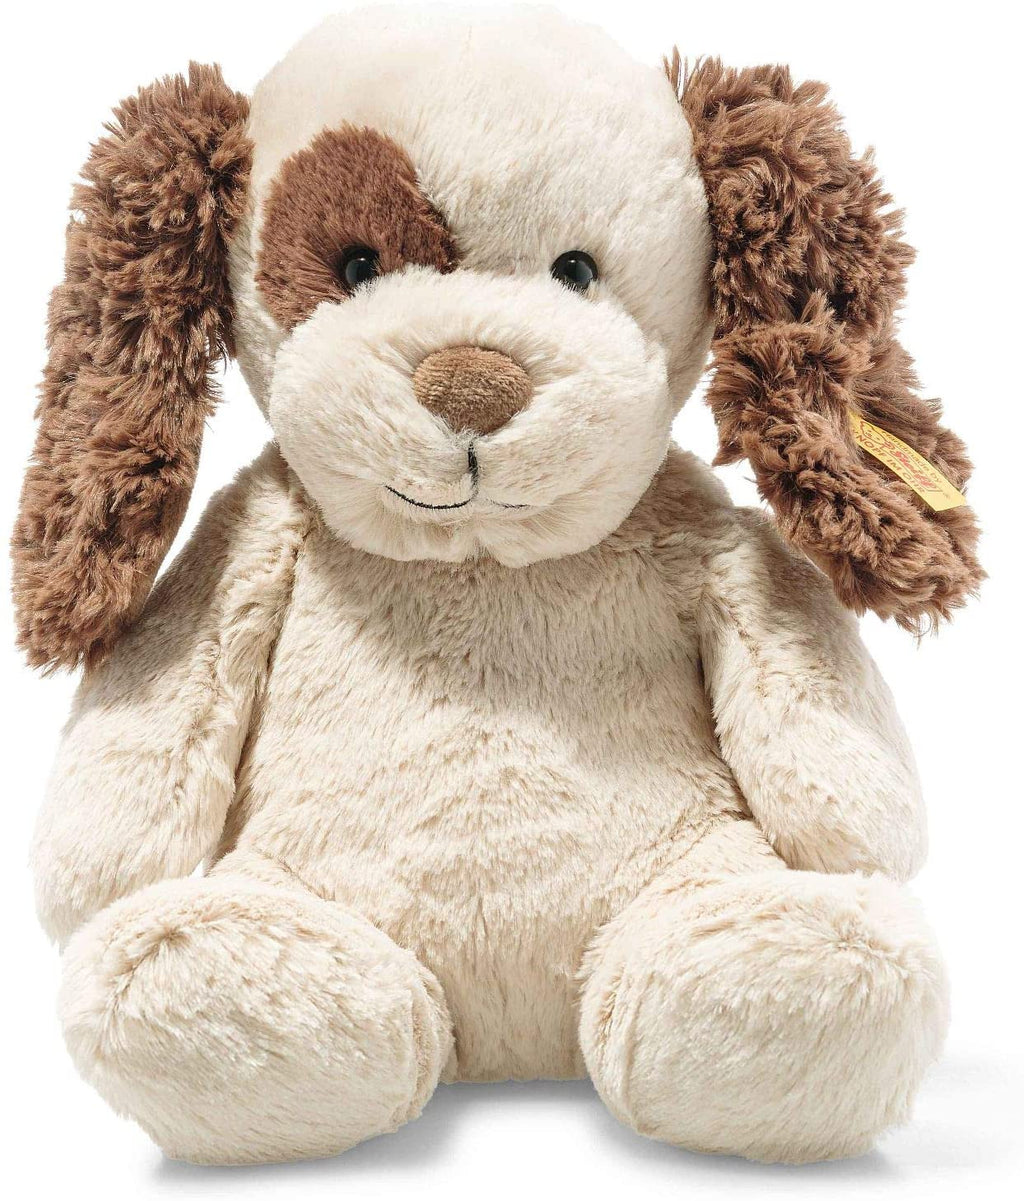 Steiff Peppi Dog Medium Cuddly Soft Plush Teddy Bear EAN 083594